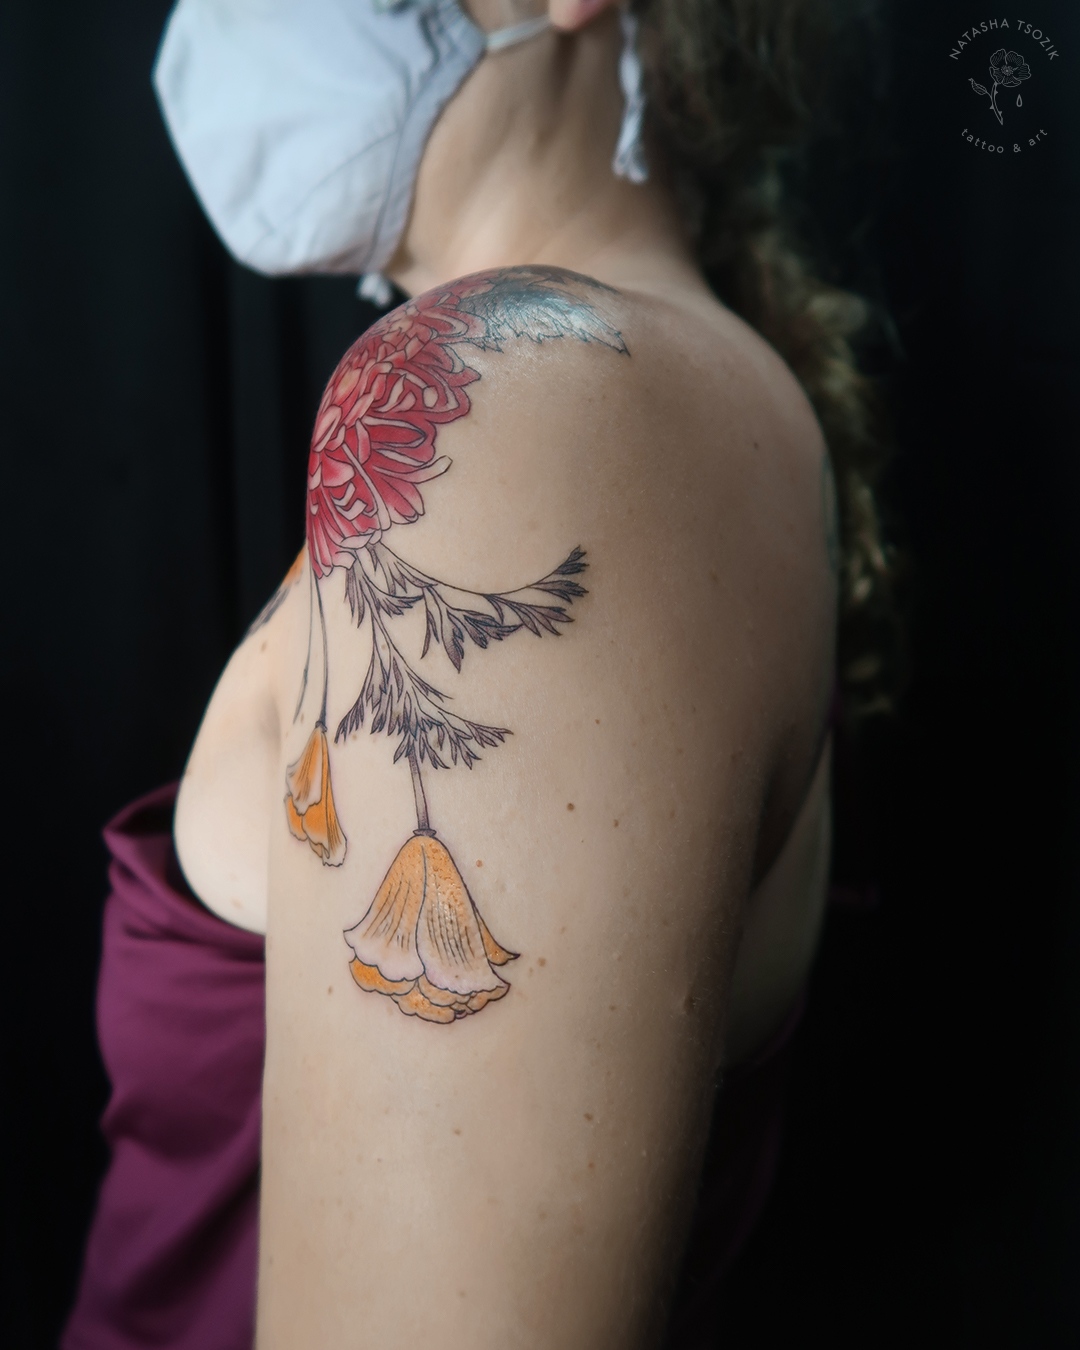 Crysanthemum, marigold and poppies tattoo by Natasha Tsozik 2